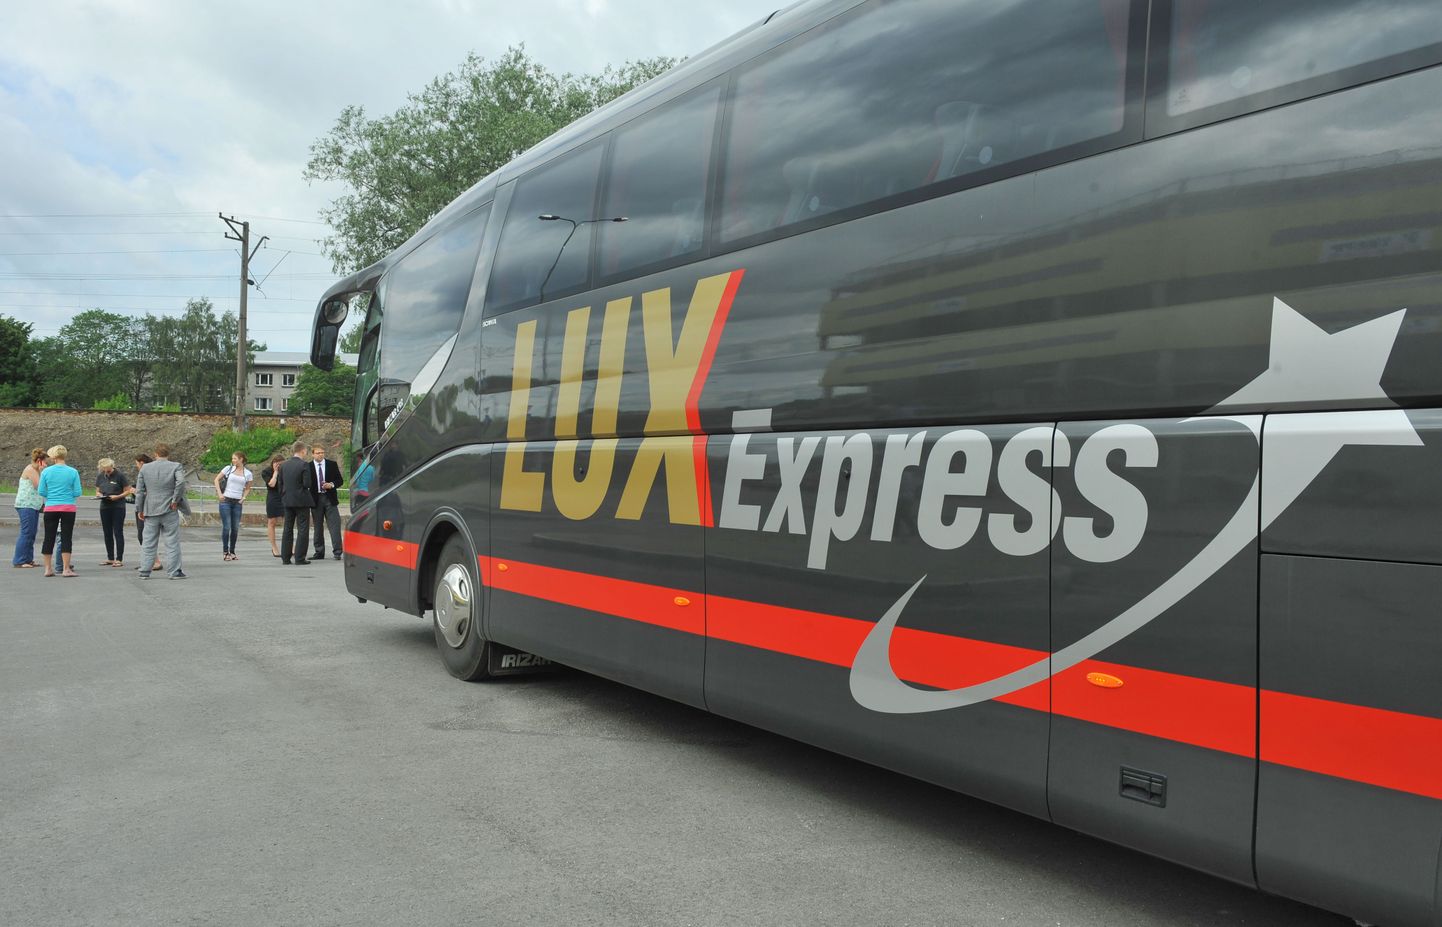 Автобус Lux Express. Иллюстративное фото.